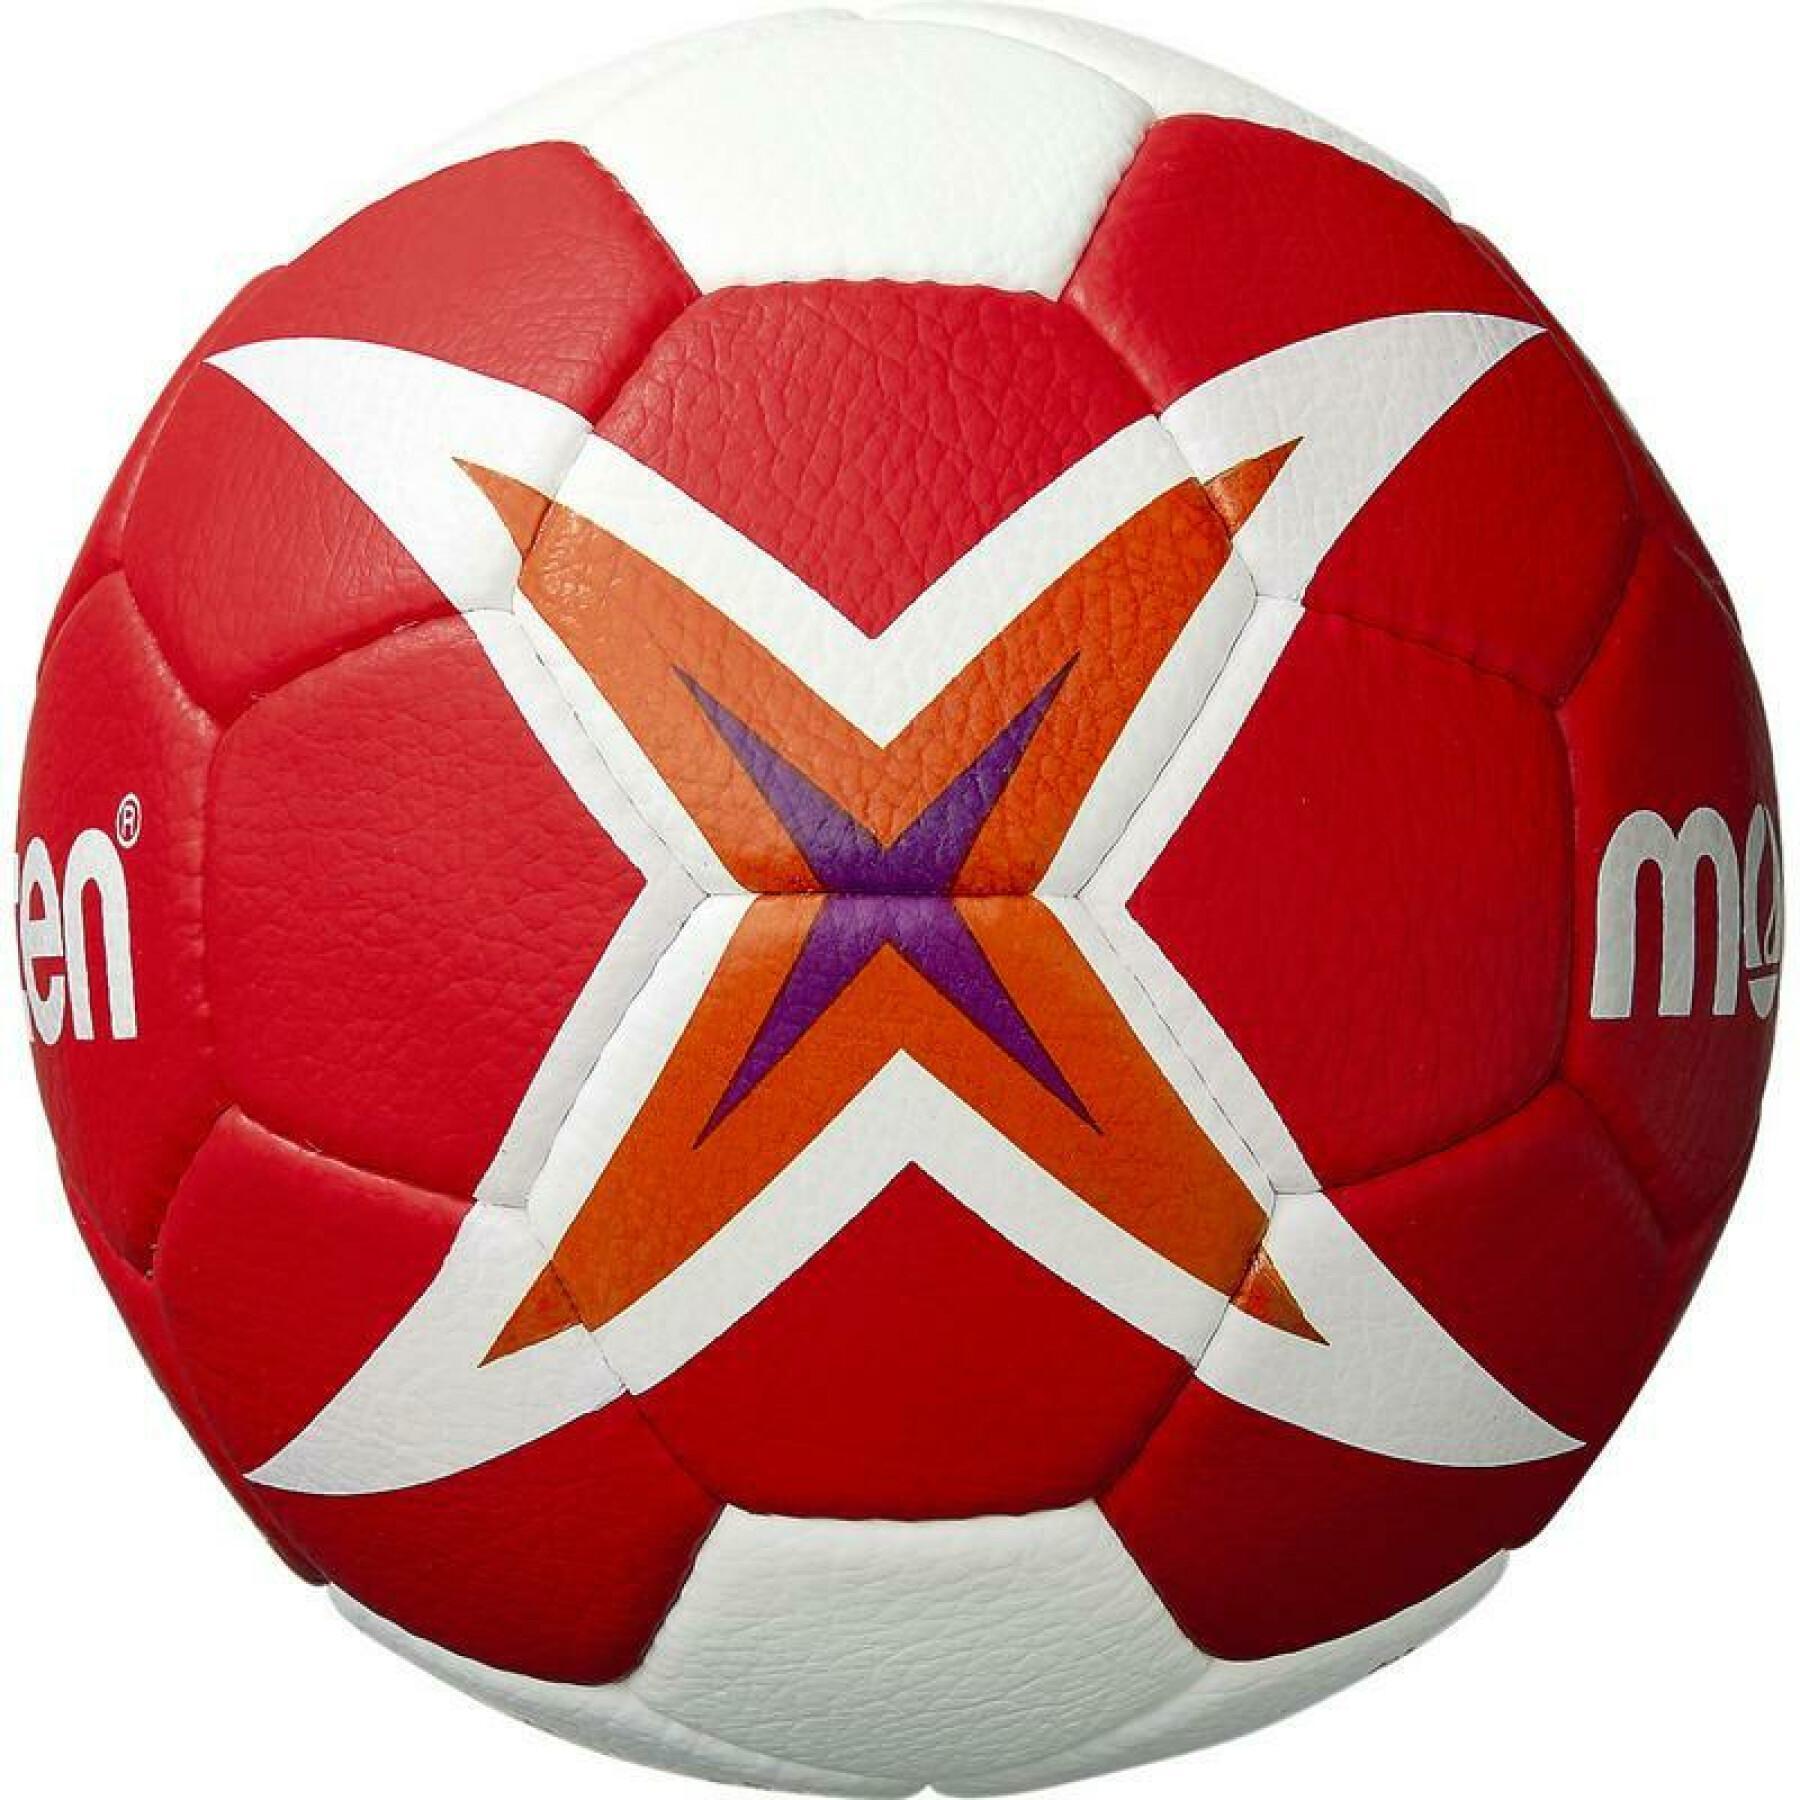 Balon Molten Officiel IHF Championnat du monde féminin 2019